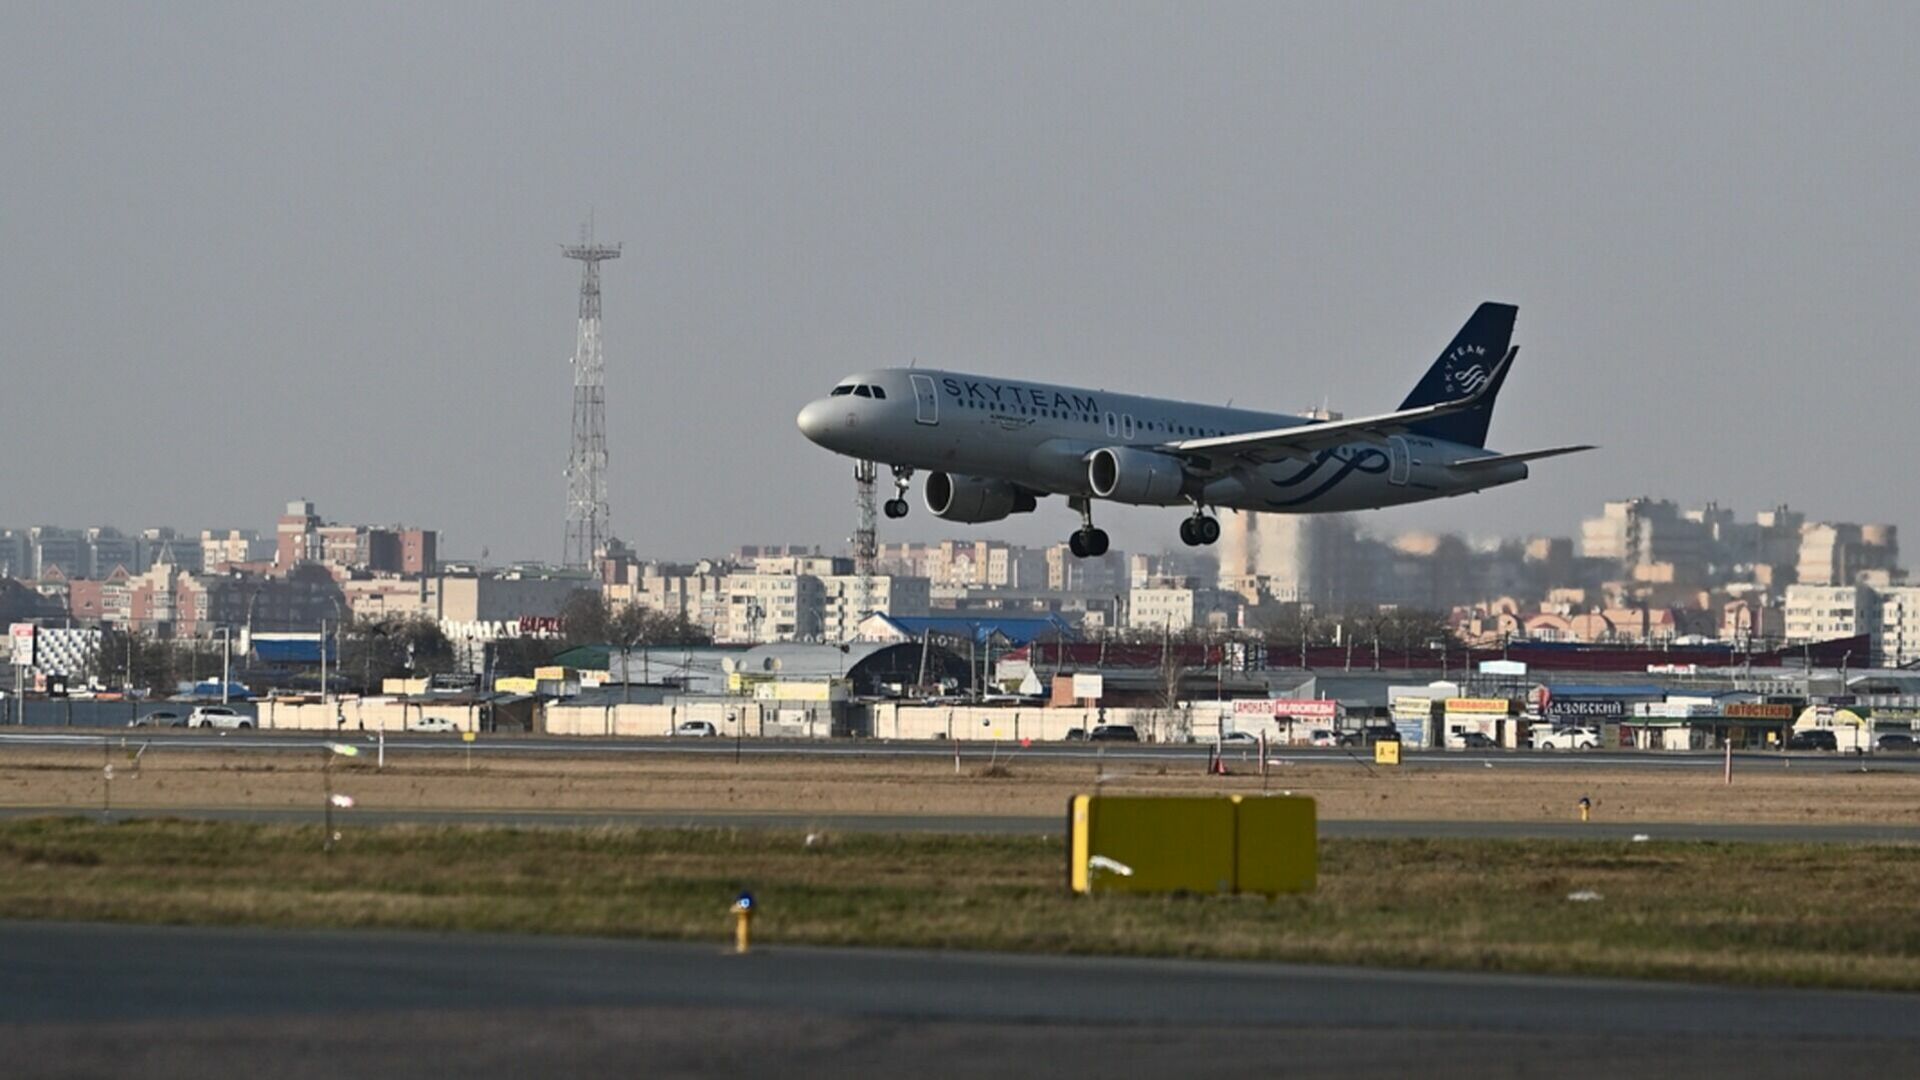 Владивосток-Китай: регулярные авиарейсы возобновляют спустя три года